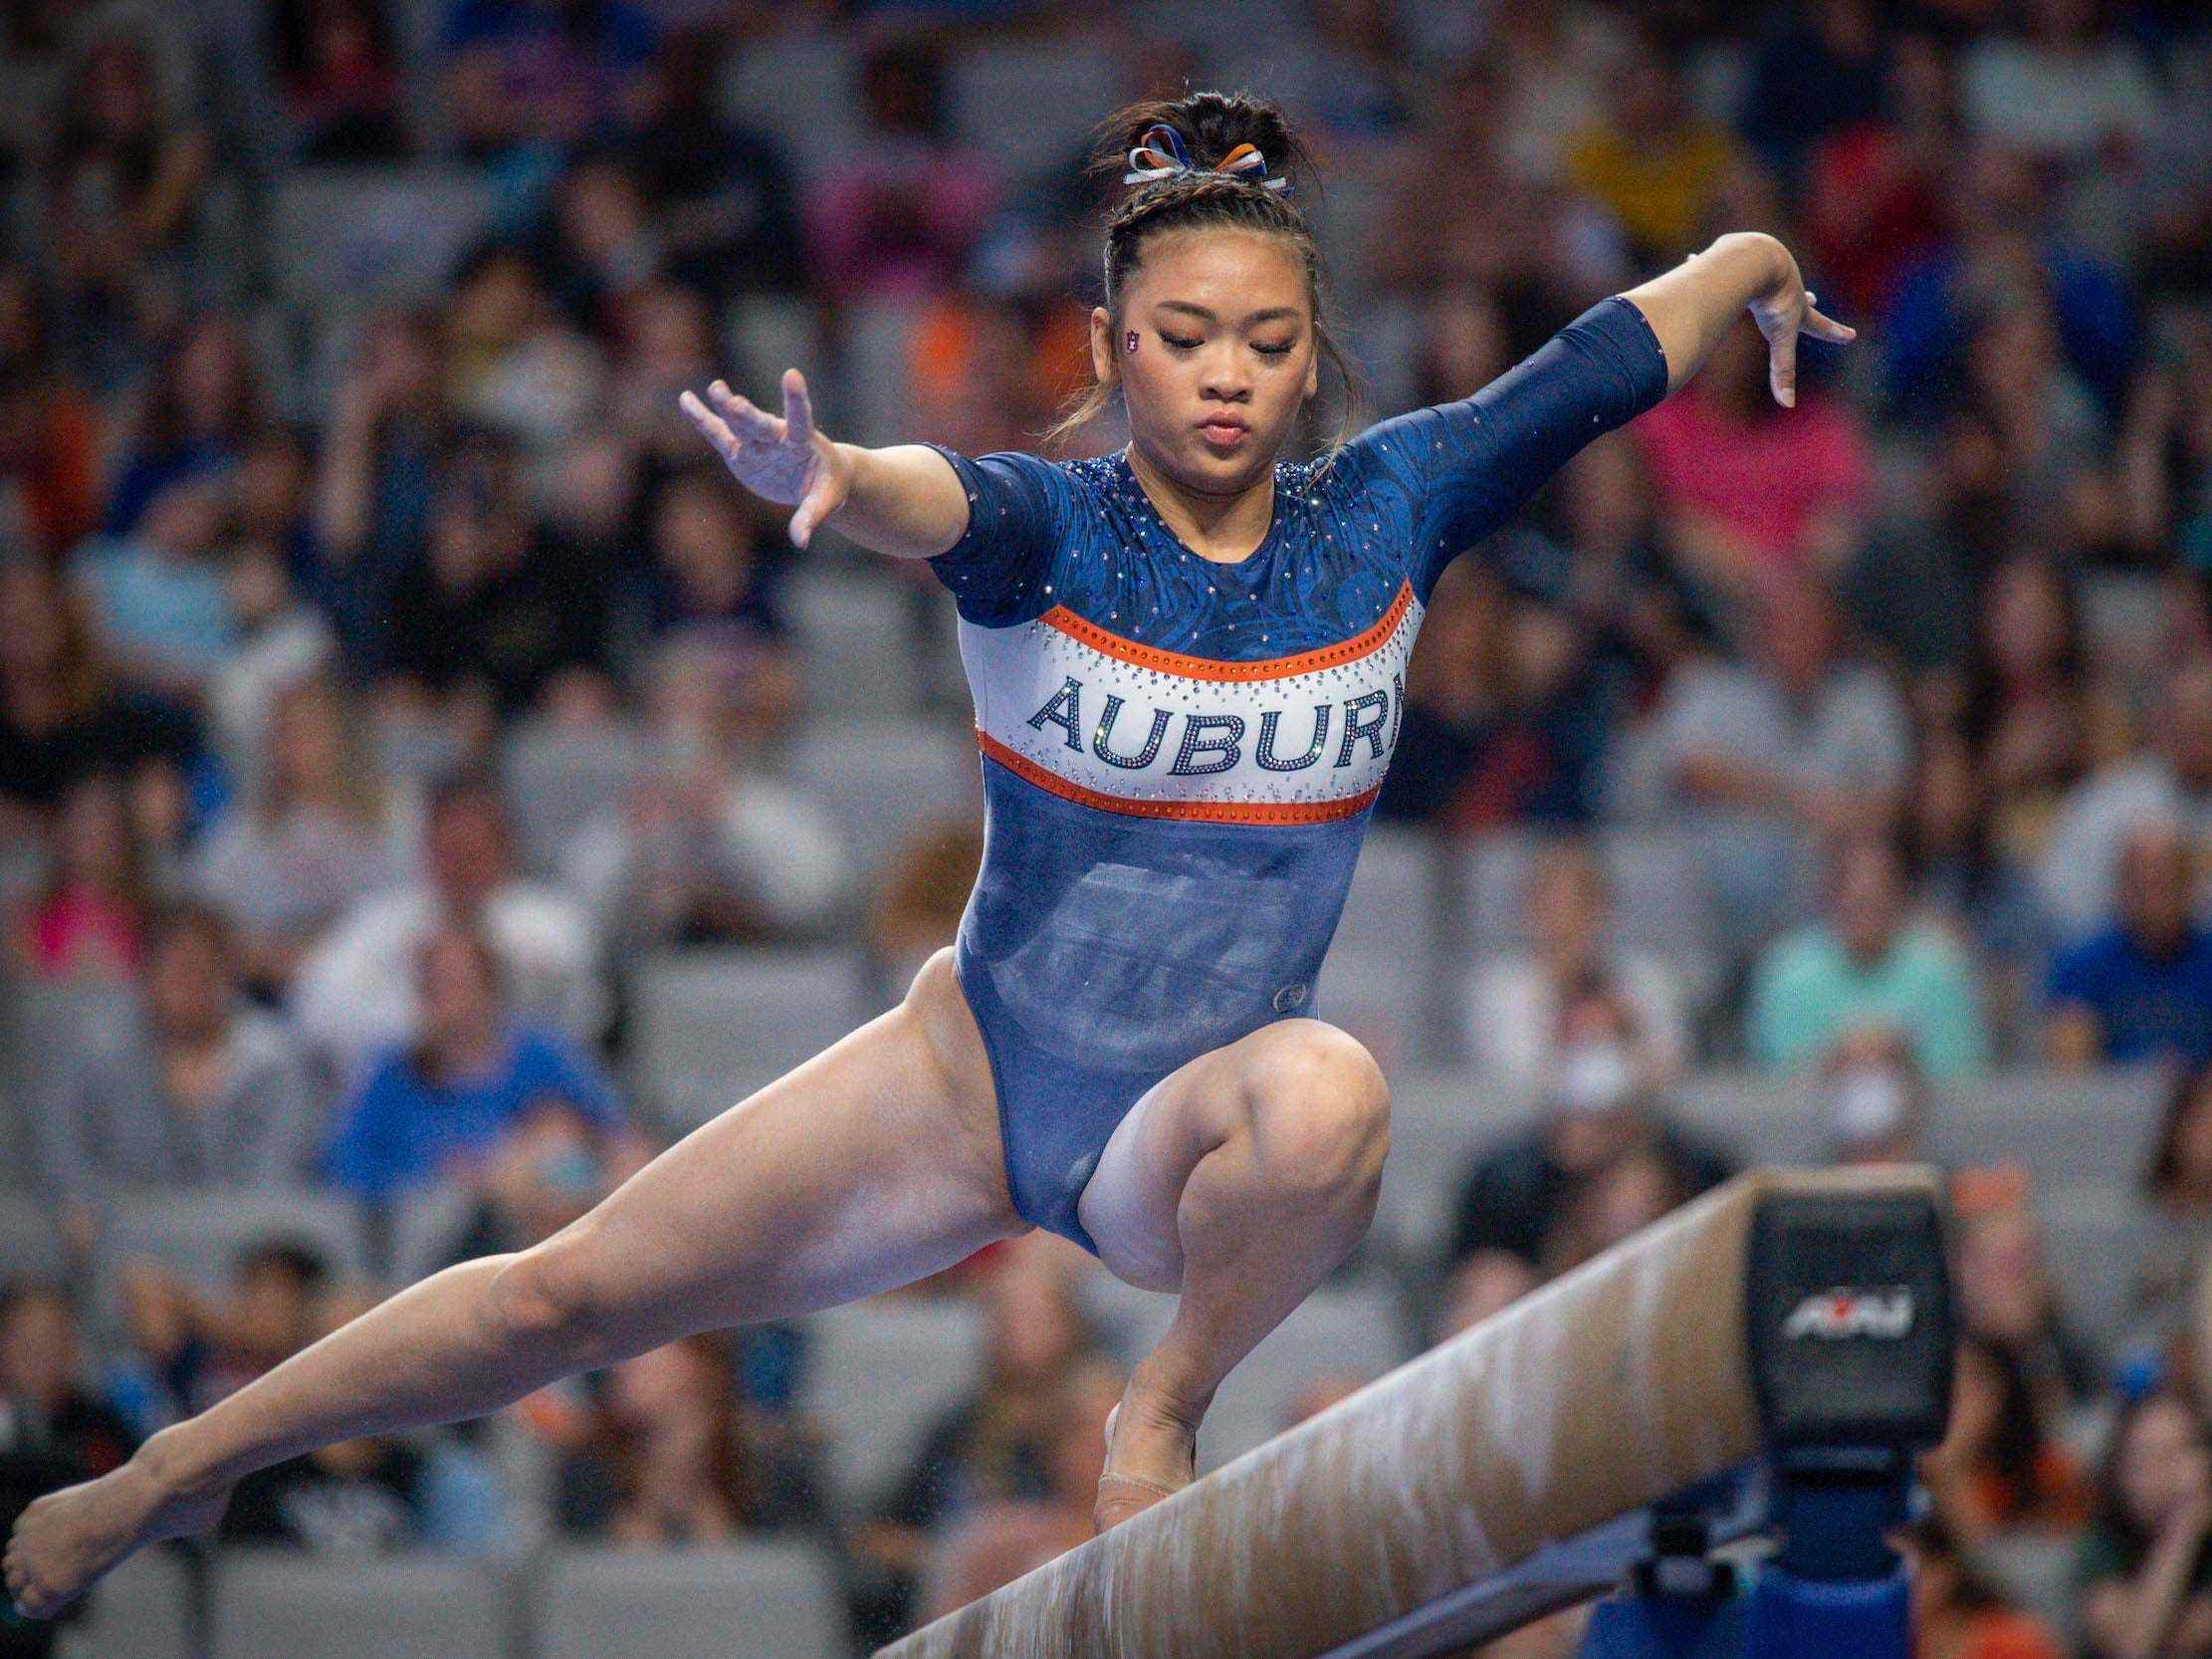 Die Allround-Olympiasiegerin Suni Lee tritt bei der NCAA Women's Gymnastics Championship 2022 für Auburn an.